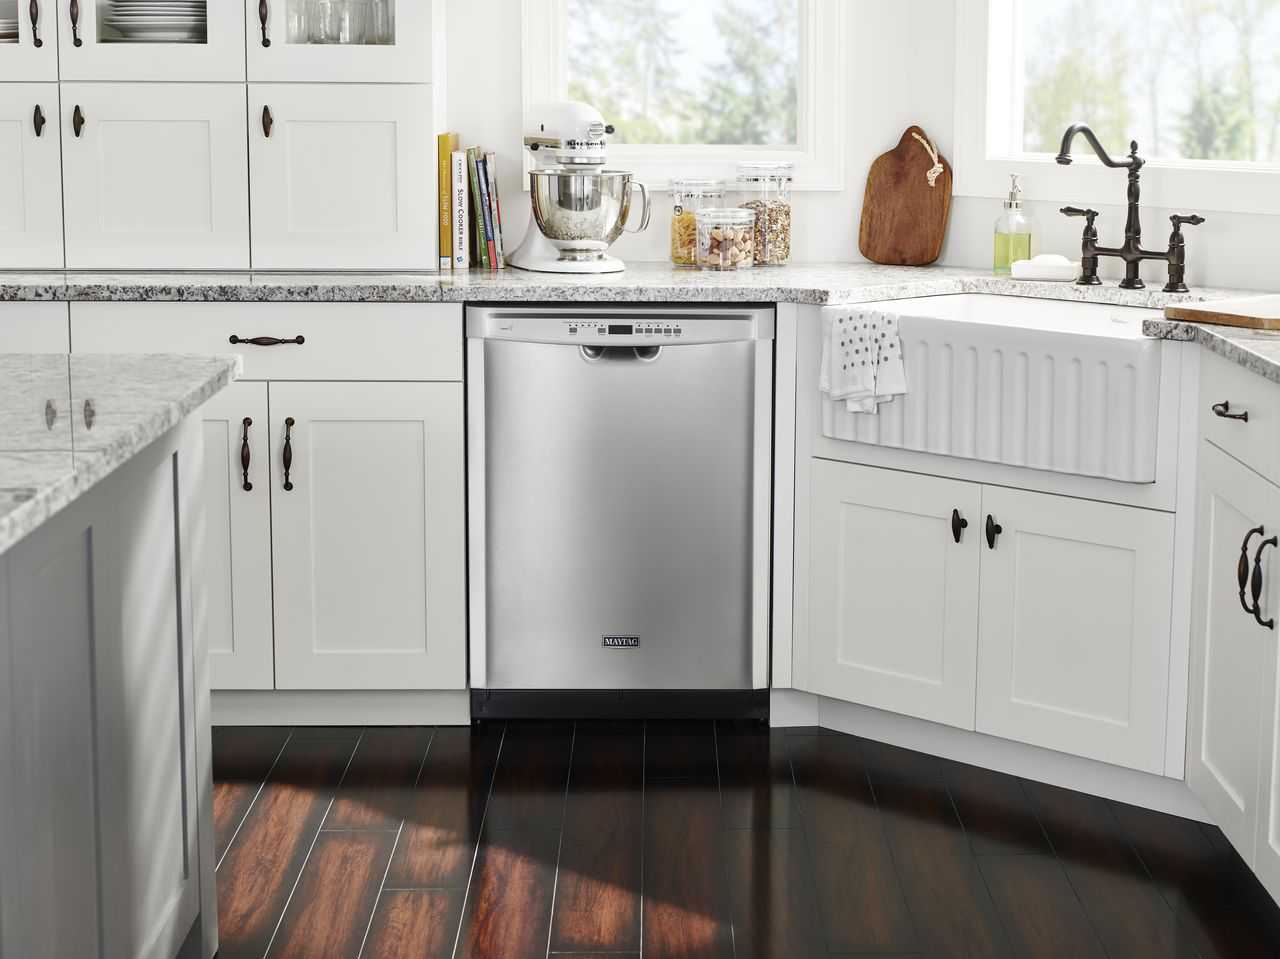 Топ—8. лучшие недорогие посудомоечные машины. итоговый рейтинг 2021 года!